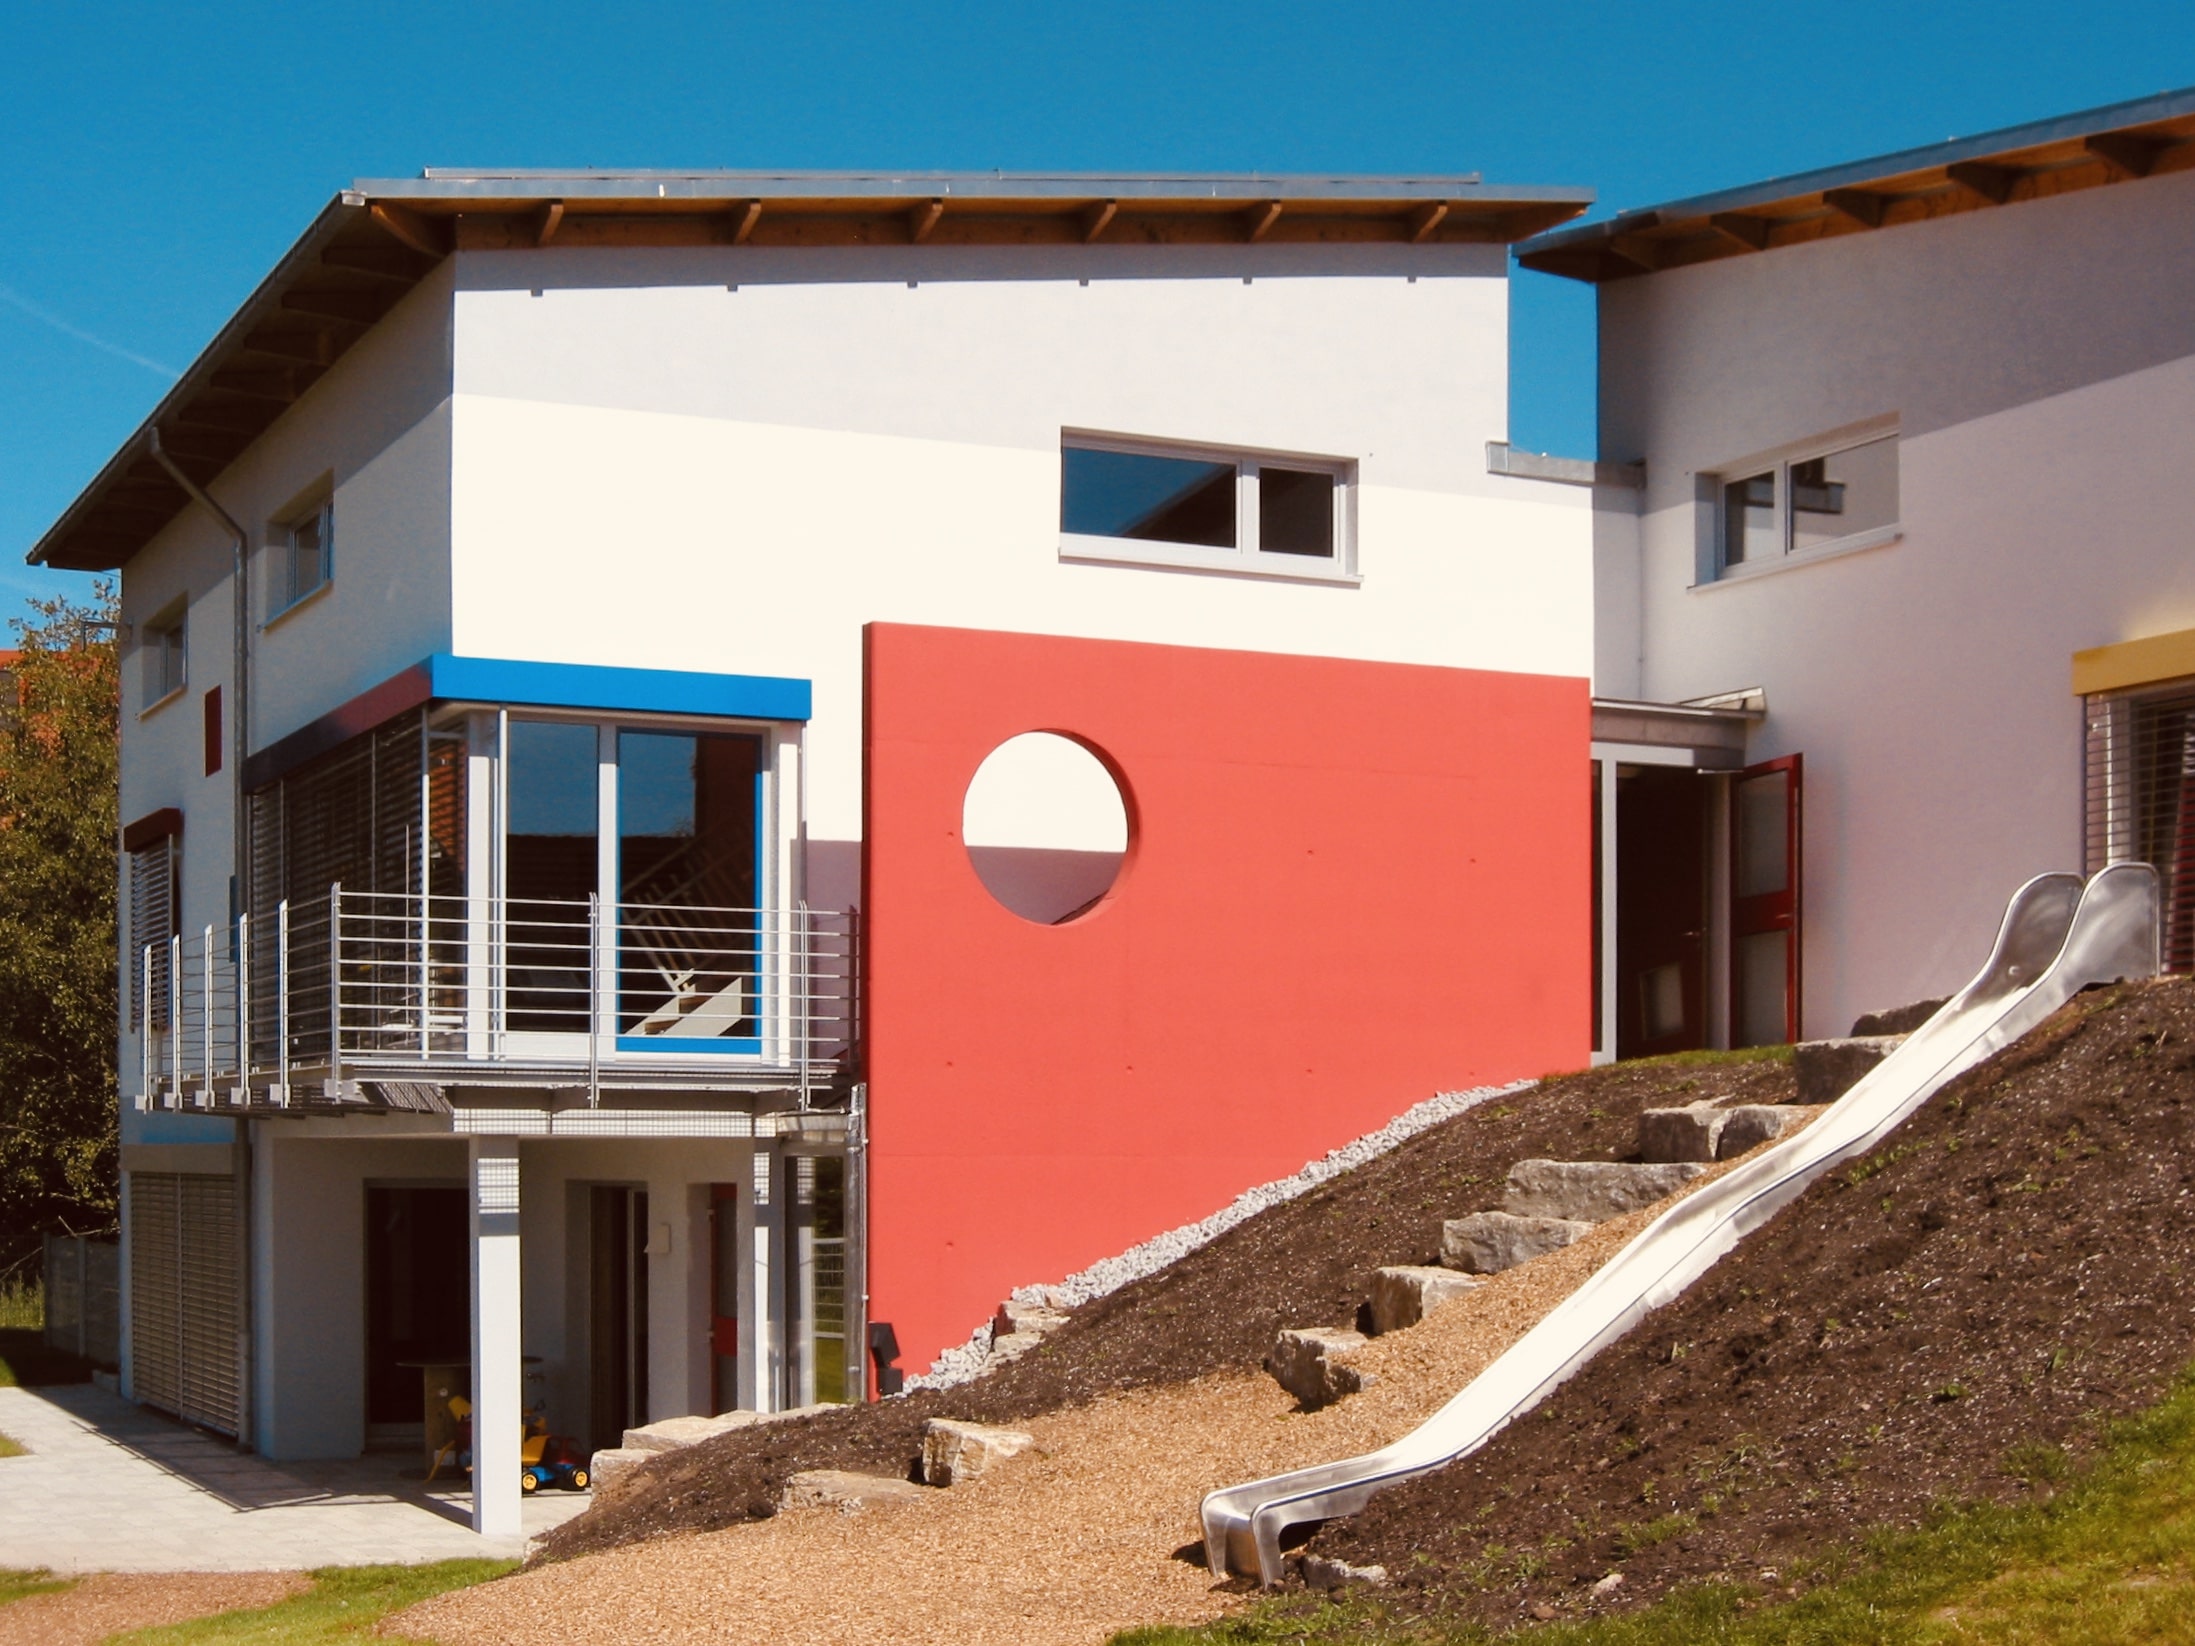 Kinderhaus Abtsgmünd 2004
Minimalenergiebauweise
Begrünte Dachflächen
Solartechnik